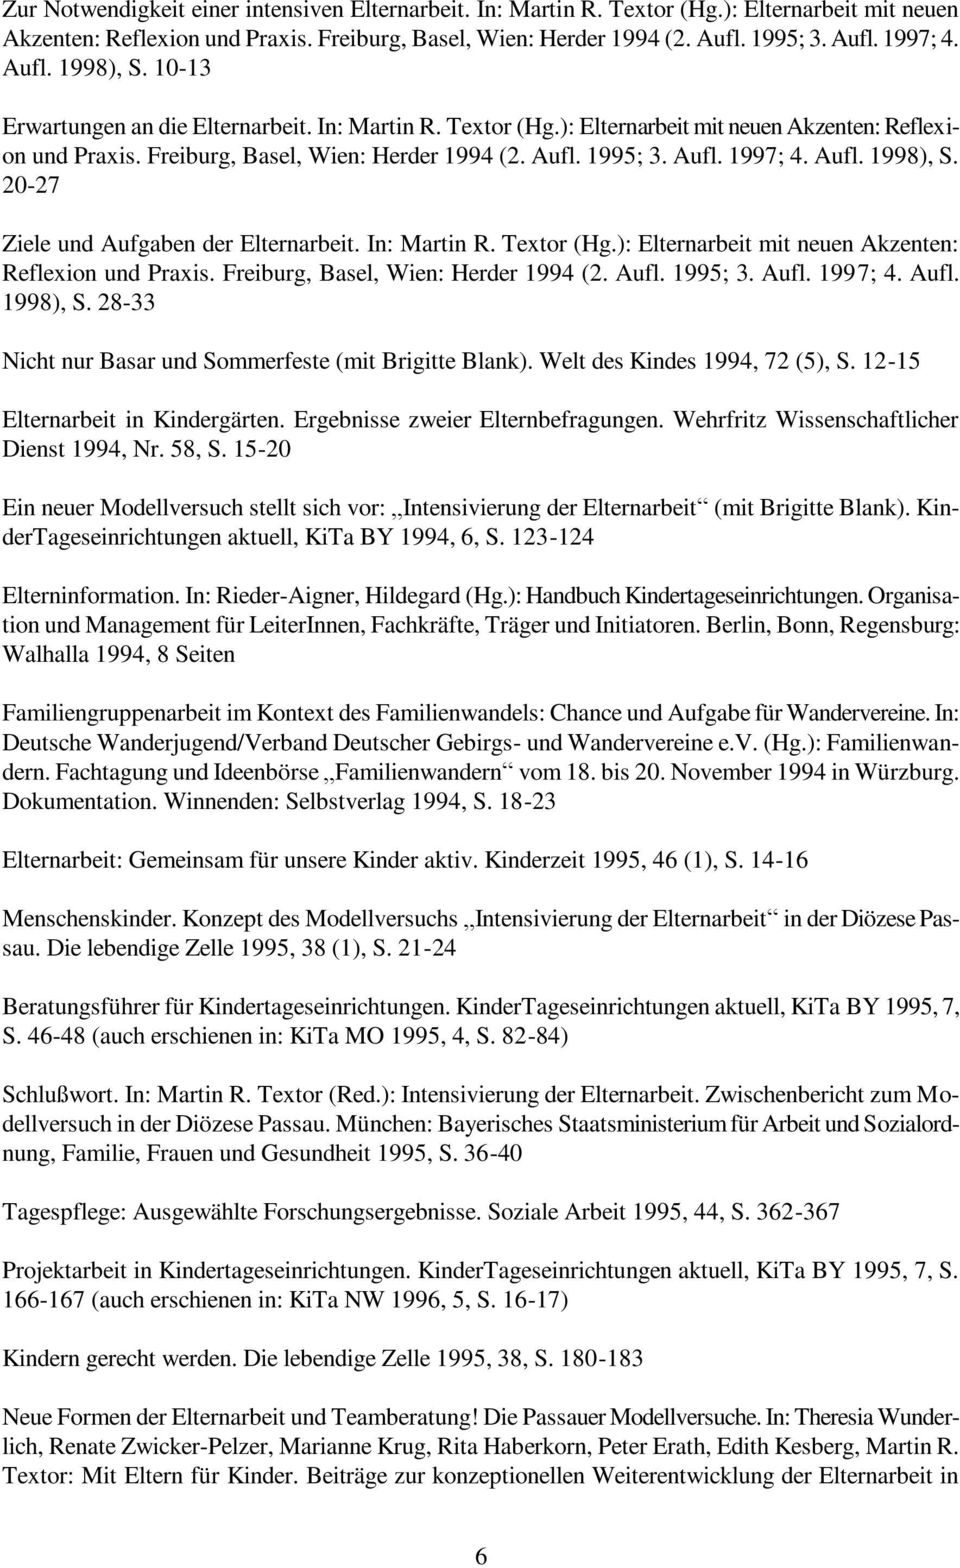 Aufl. 1998), S. 20-27 Ziele und Aufgaben der Elternarbeit. In: Martin R. Textor (Hg.): Elternarbeit mit neuen Akzenten: Reflexion und Praxis. Freiburg, Basel, Wien: Herder 1994 (2. Aufl. 1995; 3.